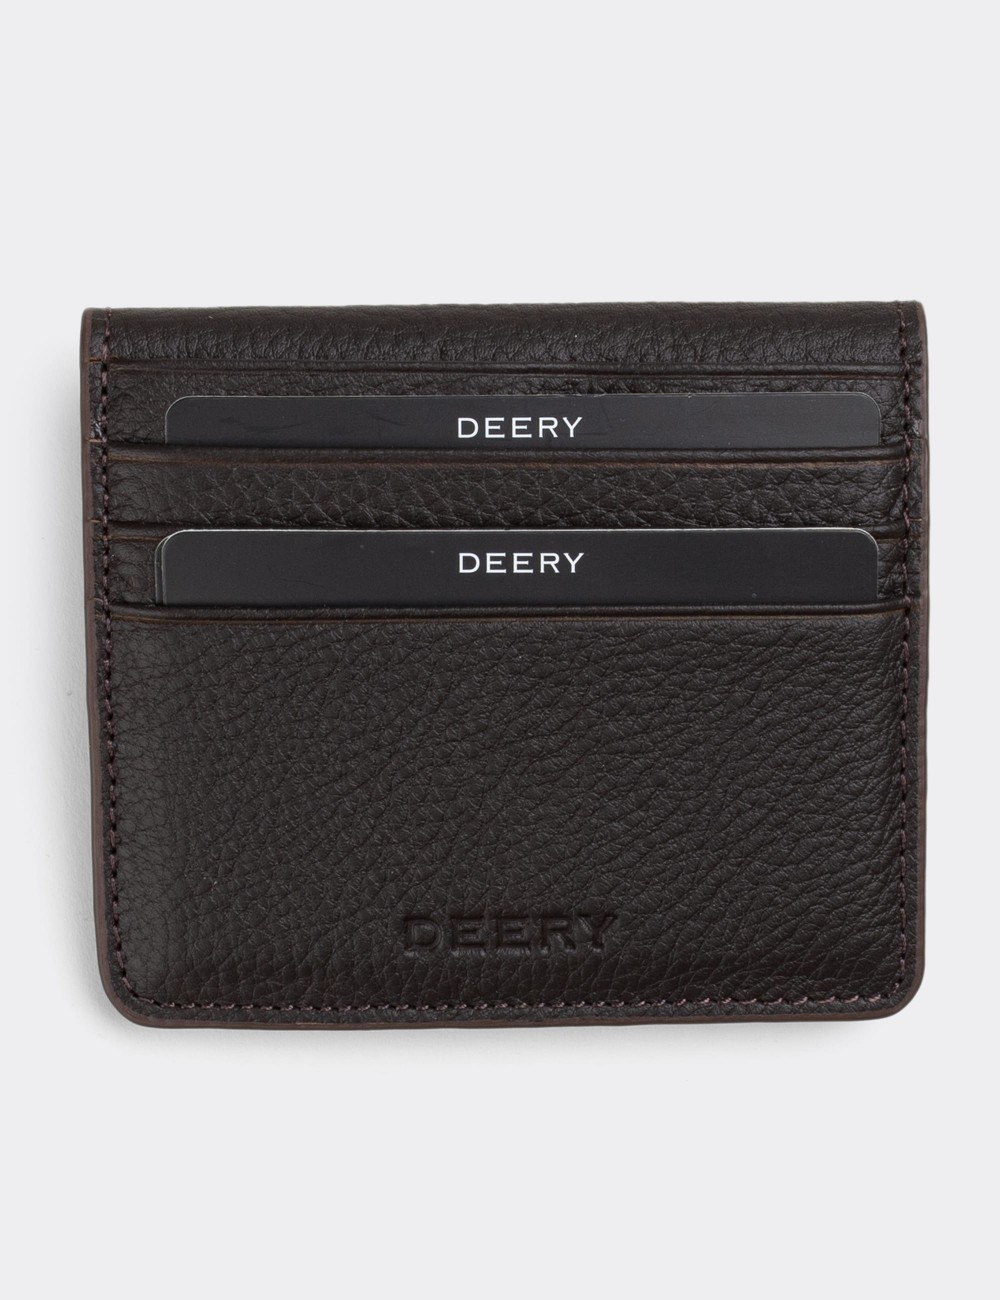  Leather Brown Men's Wallet - 00512MKHVZ01